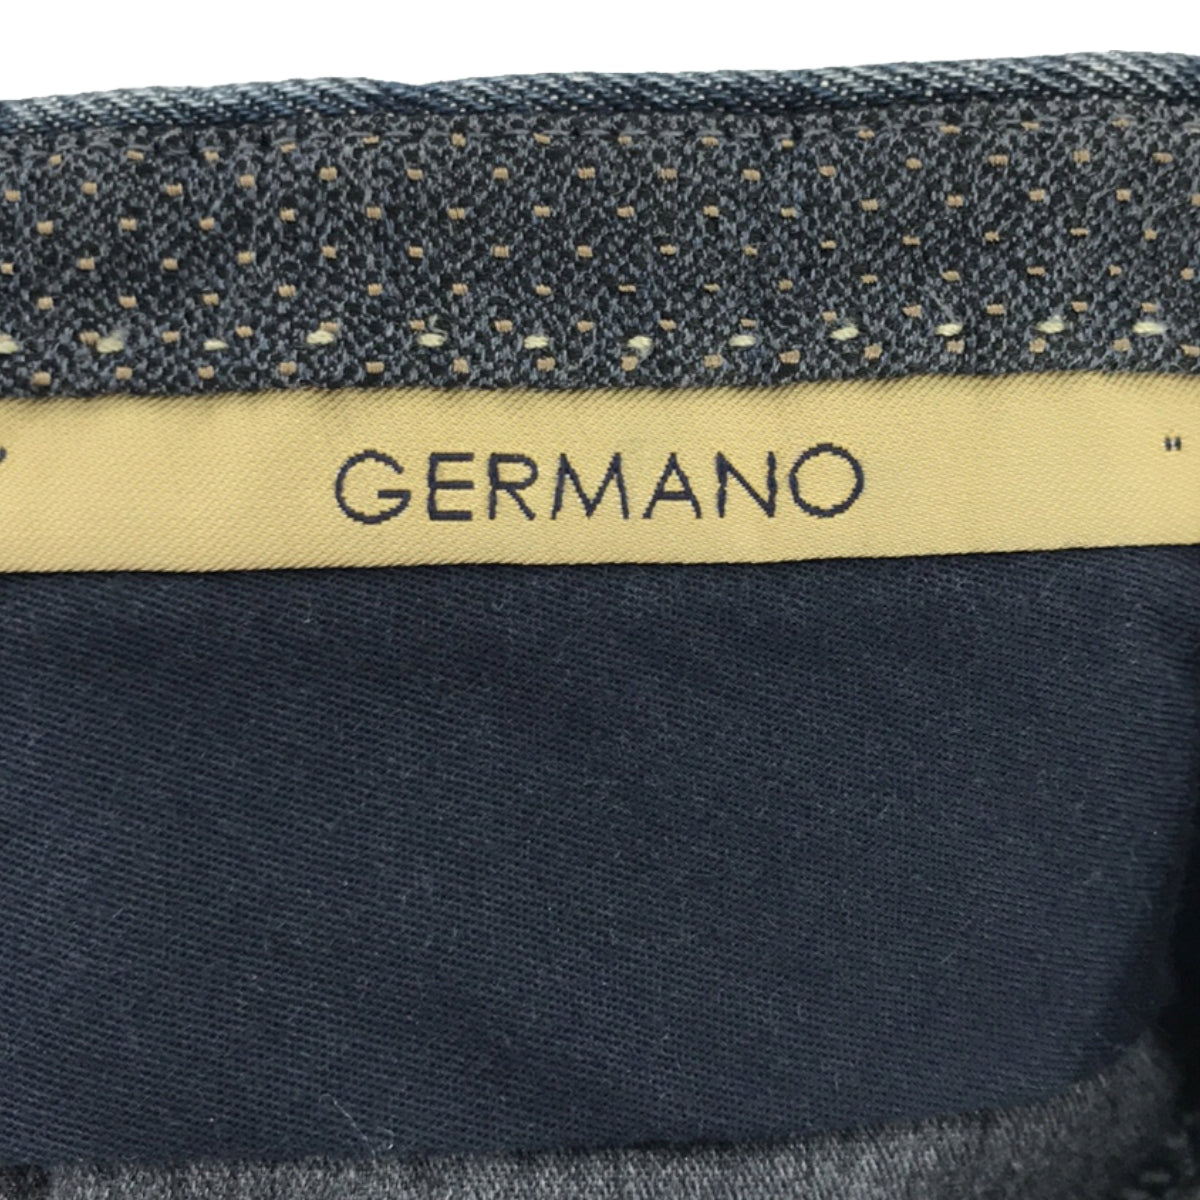 GERMANO / ジェルマーノ | 2タック ストレッチ デニムスラックス | 48 | メンズ